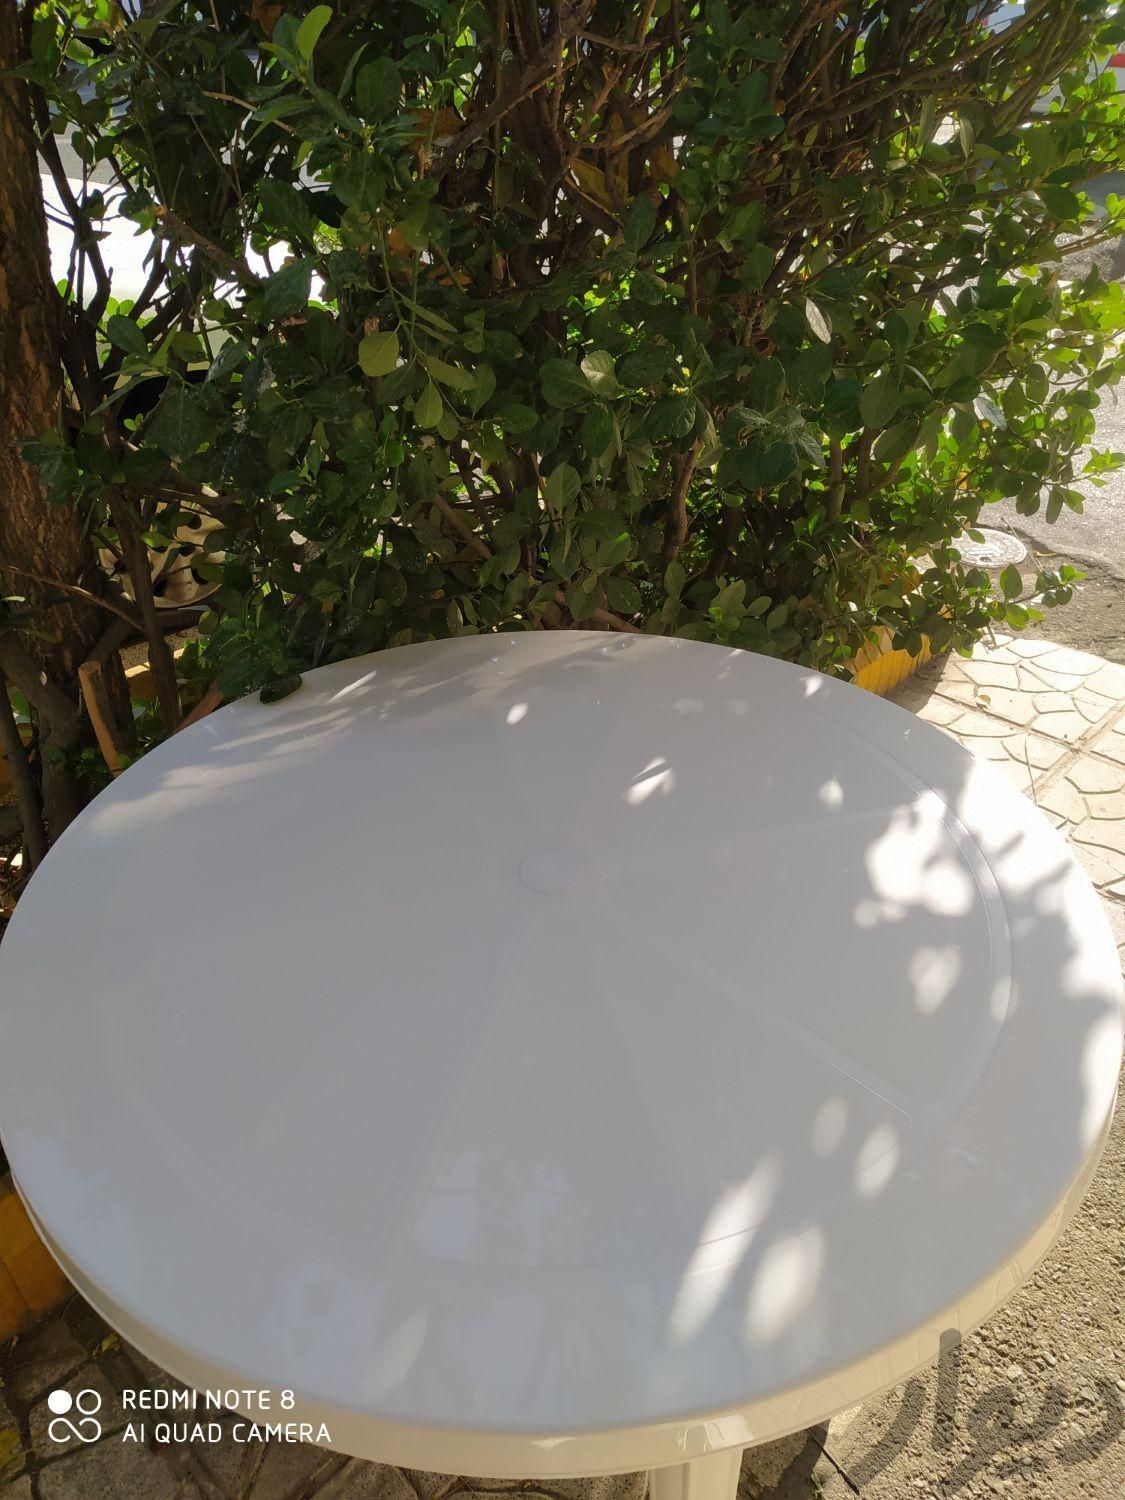 صندلی پلاستیکی میز پلاستیکی کد 519 صبا پلاستیک|میز و صندلی غذاخوری|تهران, اتحاد|دیوار